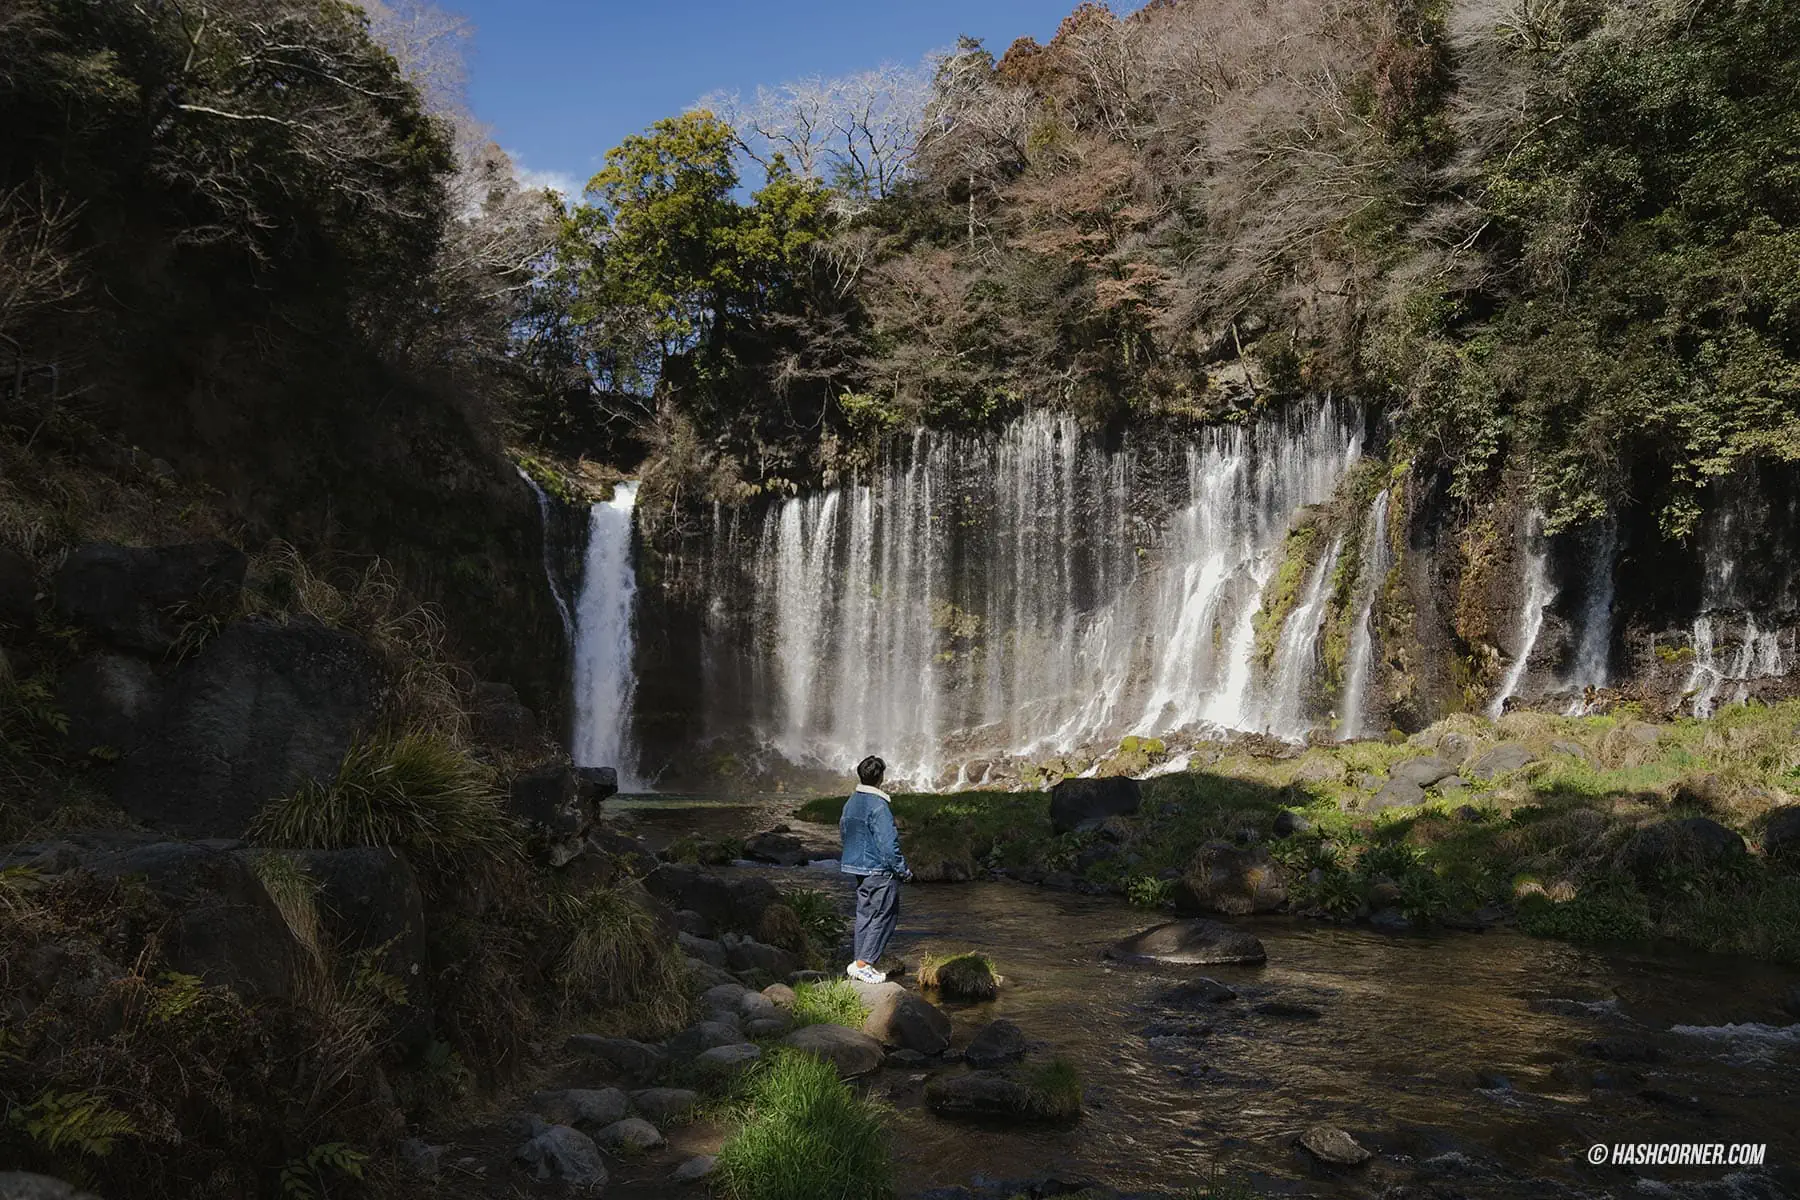 รีวิว น้ำตกชิราอิโตะ (Shiraito Falls) x ชิซึโอกะ เที่ยวน้ำตกท่ามกลางธรรมชาติ